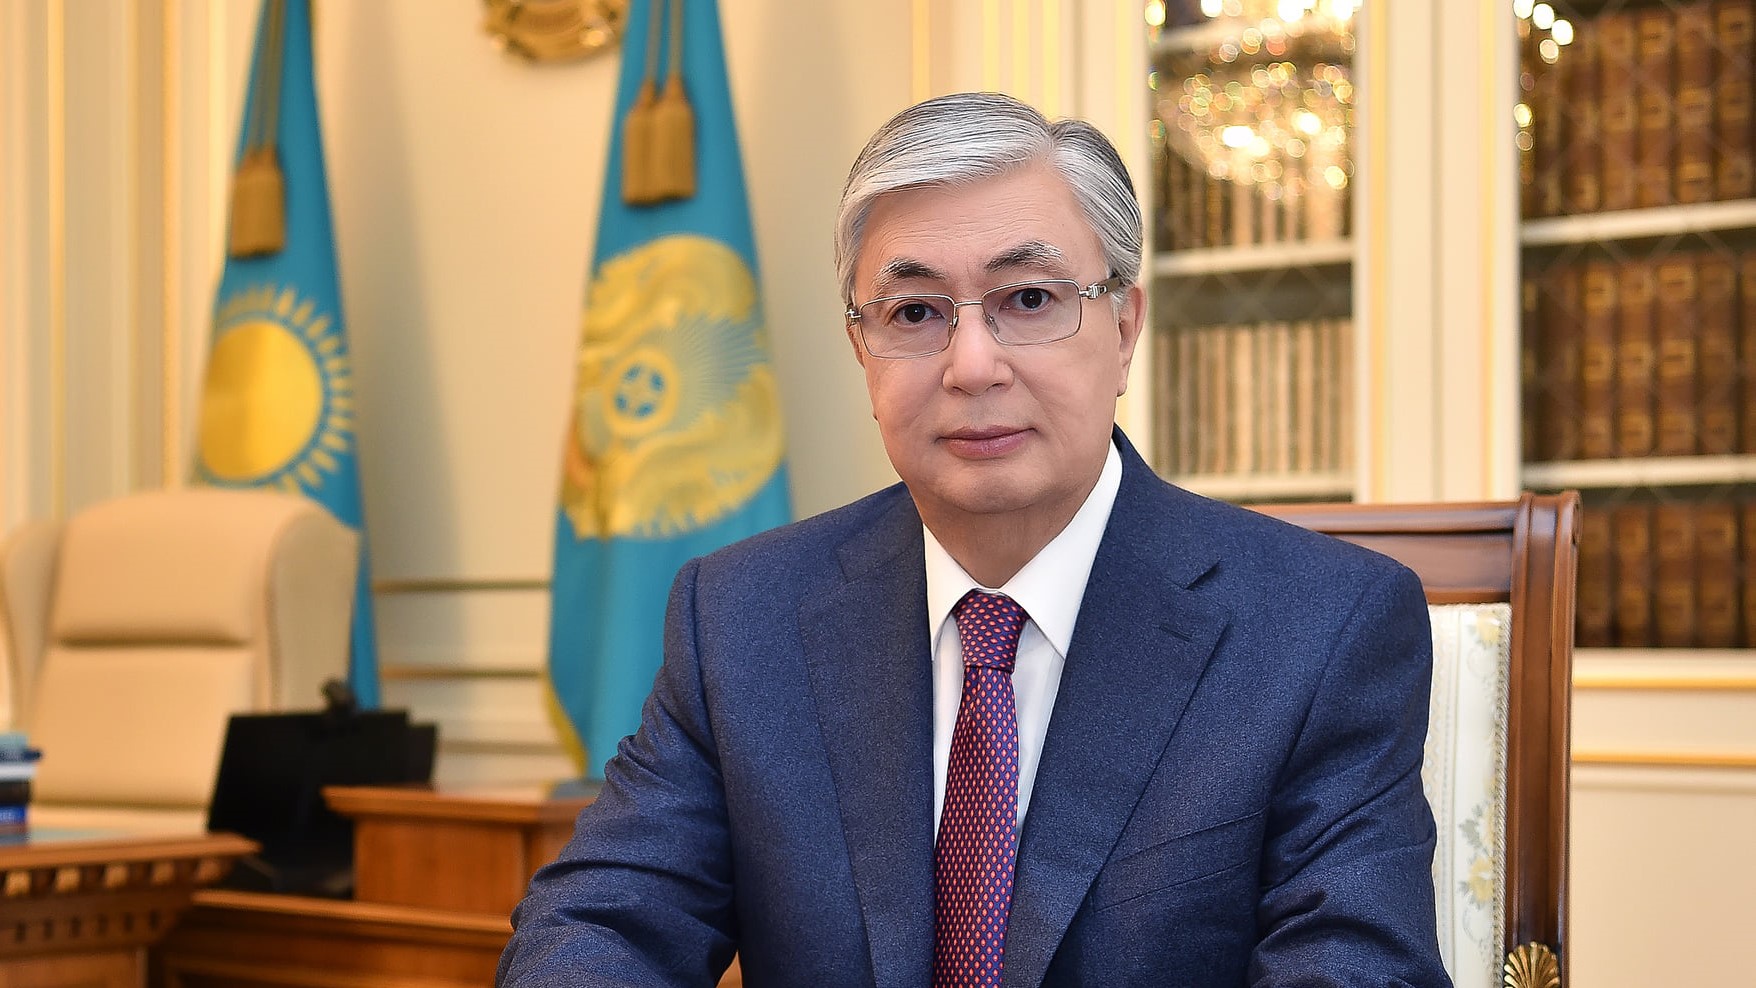 ҚР Президенті Қ.К.Тоқаевтың төтенше жағддайға байланысты үндеу жасады